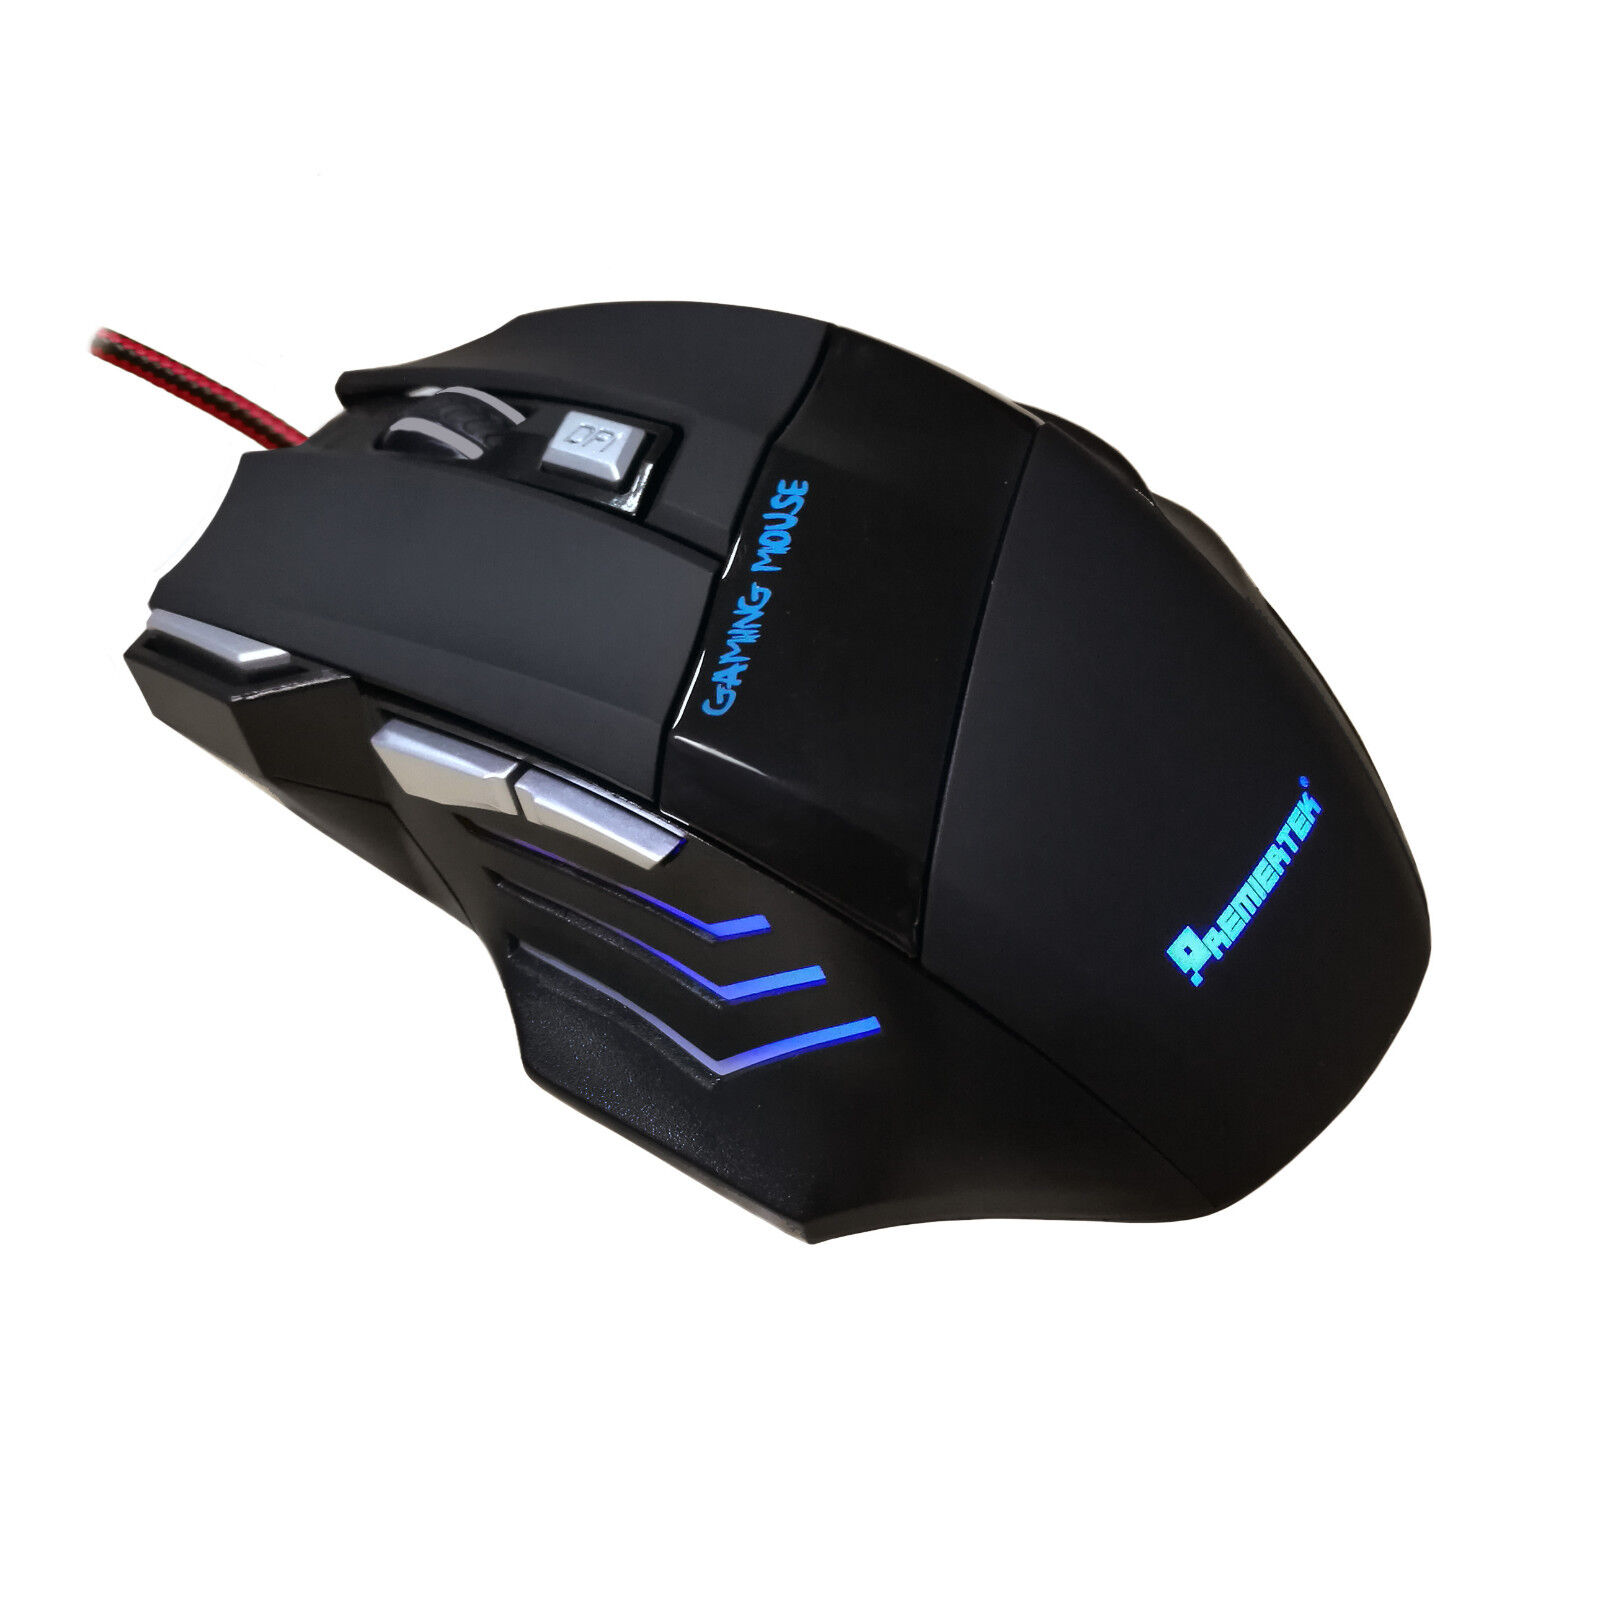 terugtrekken Verschrikkelijk Vermeend Premiertek GM-702 7-Button USB LED Gaming Mouse for sale online | eBay